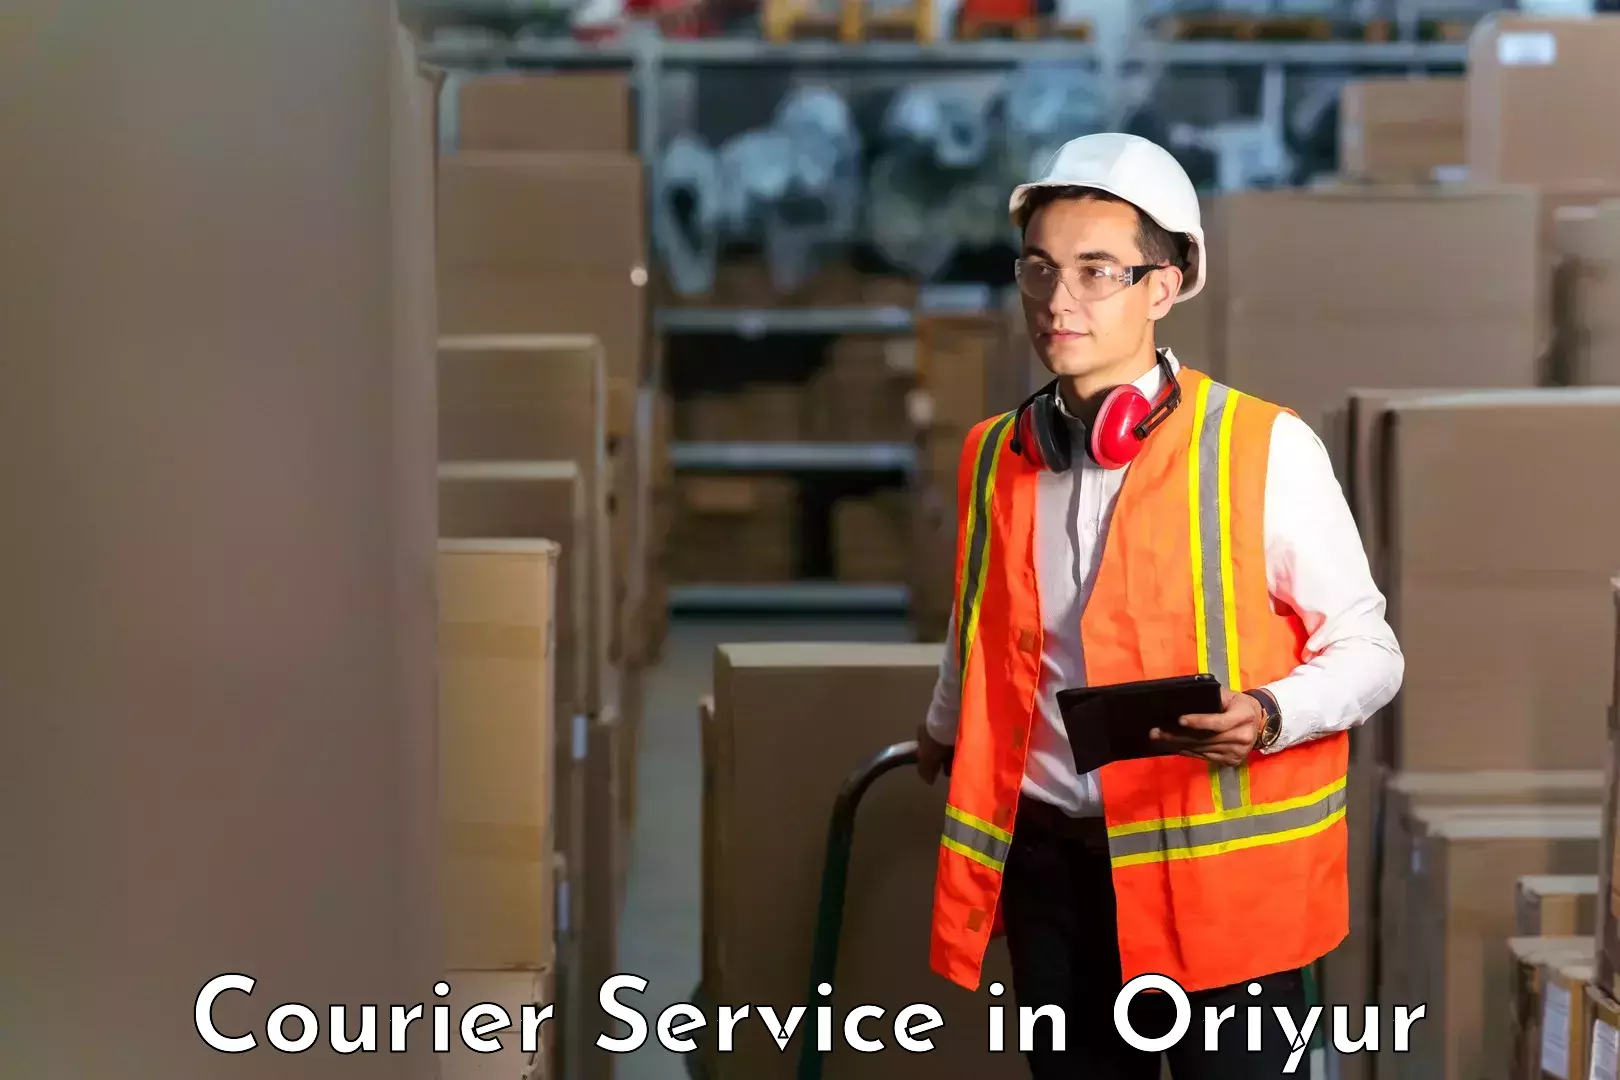 Customer-centric shipping in Oriyur